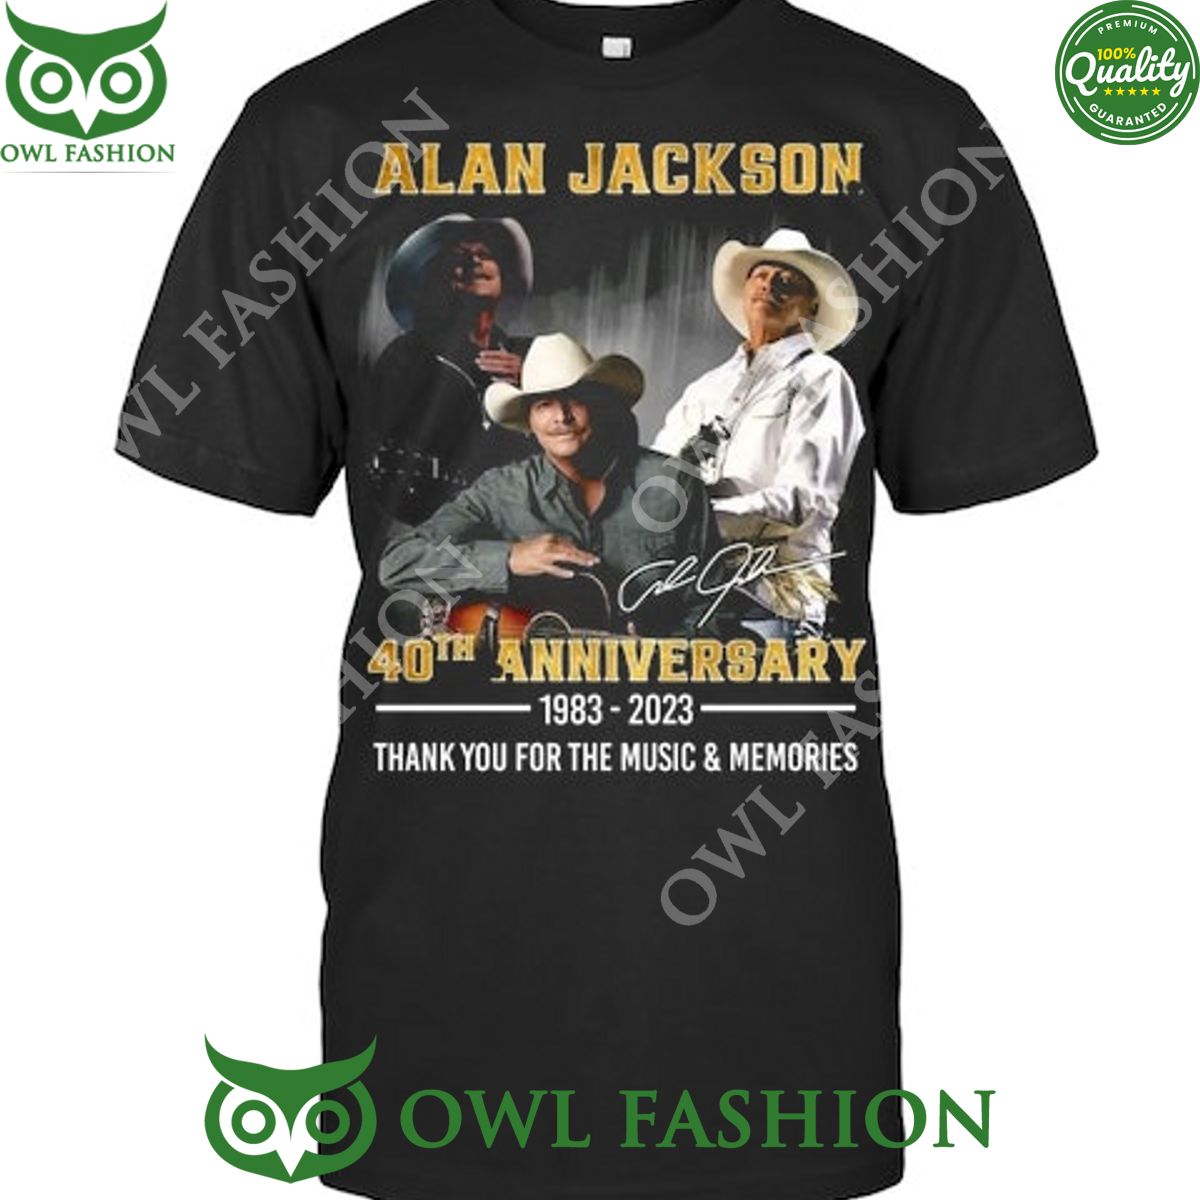 alan jackson singer 40th anniversary musisc and memories t shirt 1 cElki.jpg